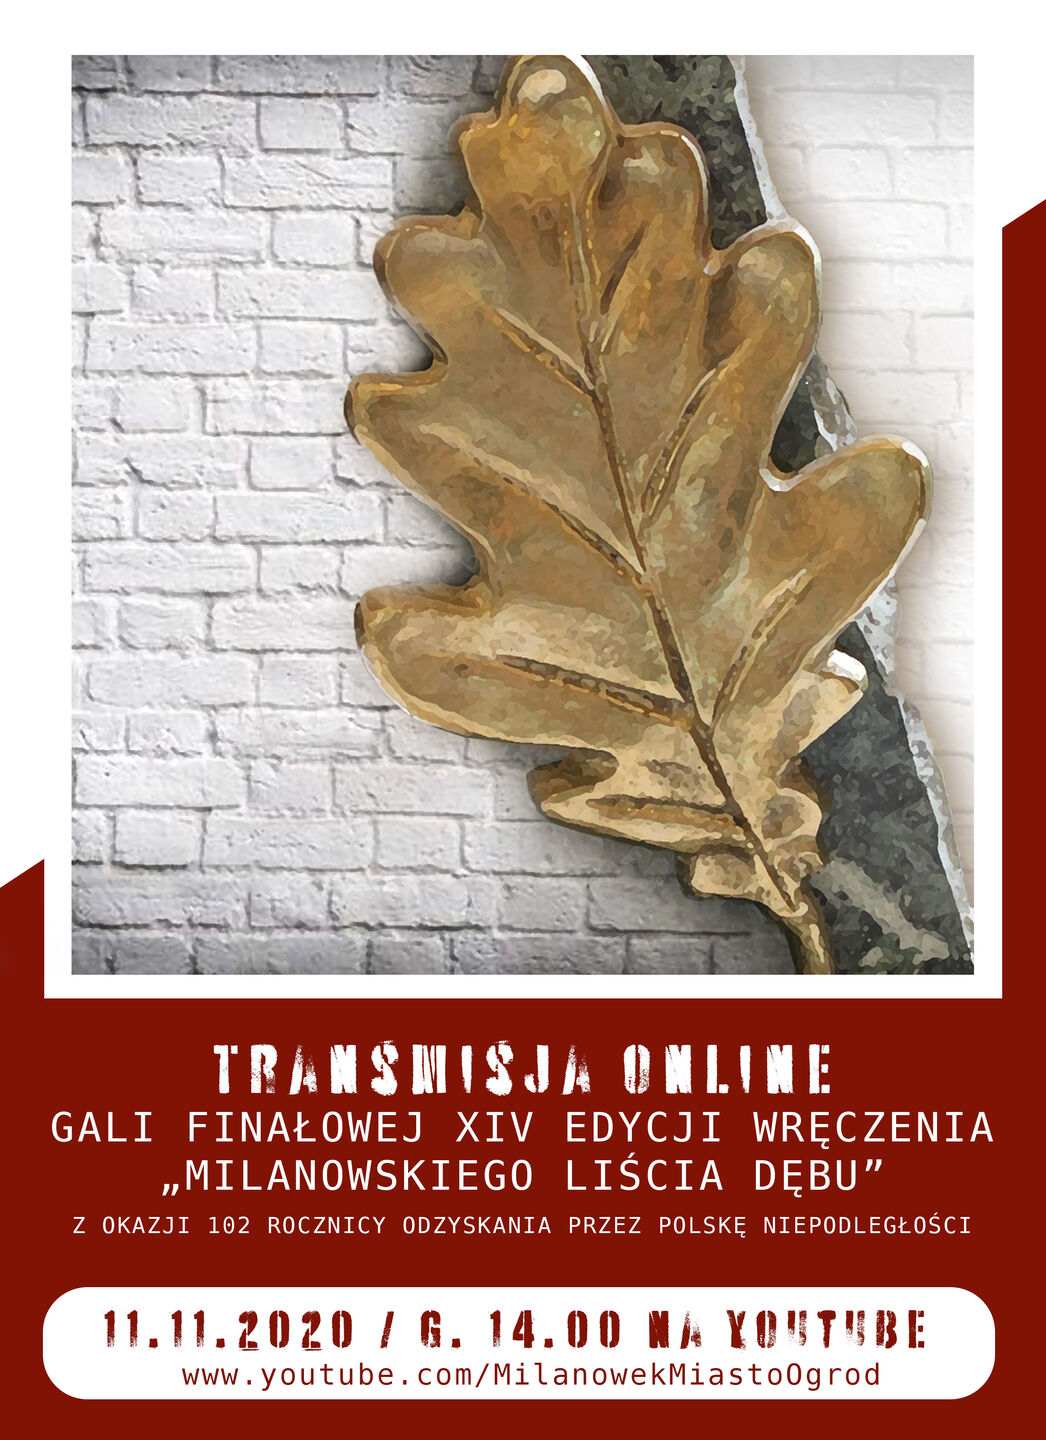 Plakat gali finałowej XIV edycji Milanowskiego Liścia Dębu